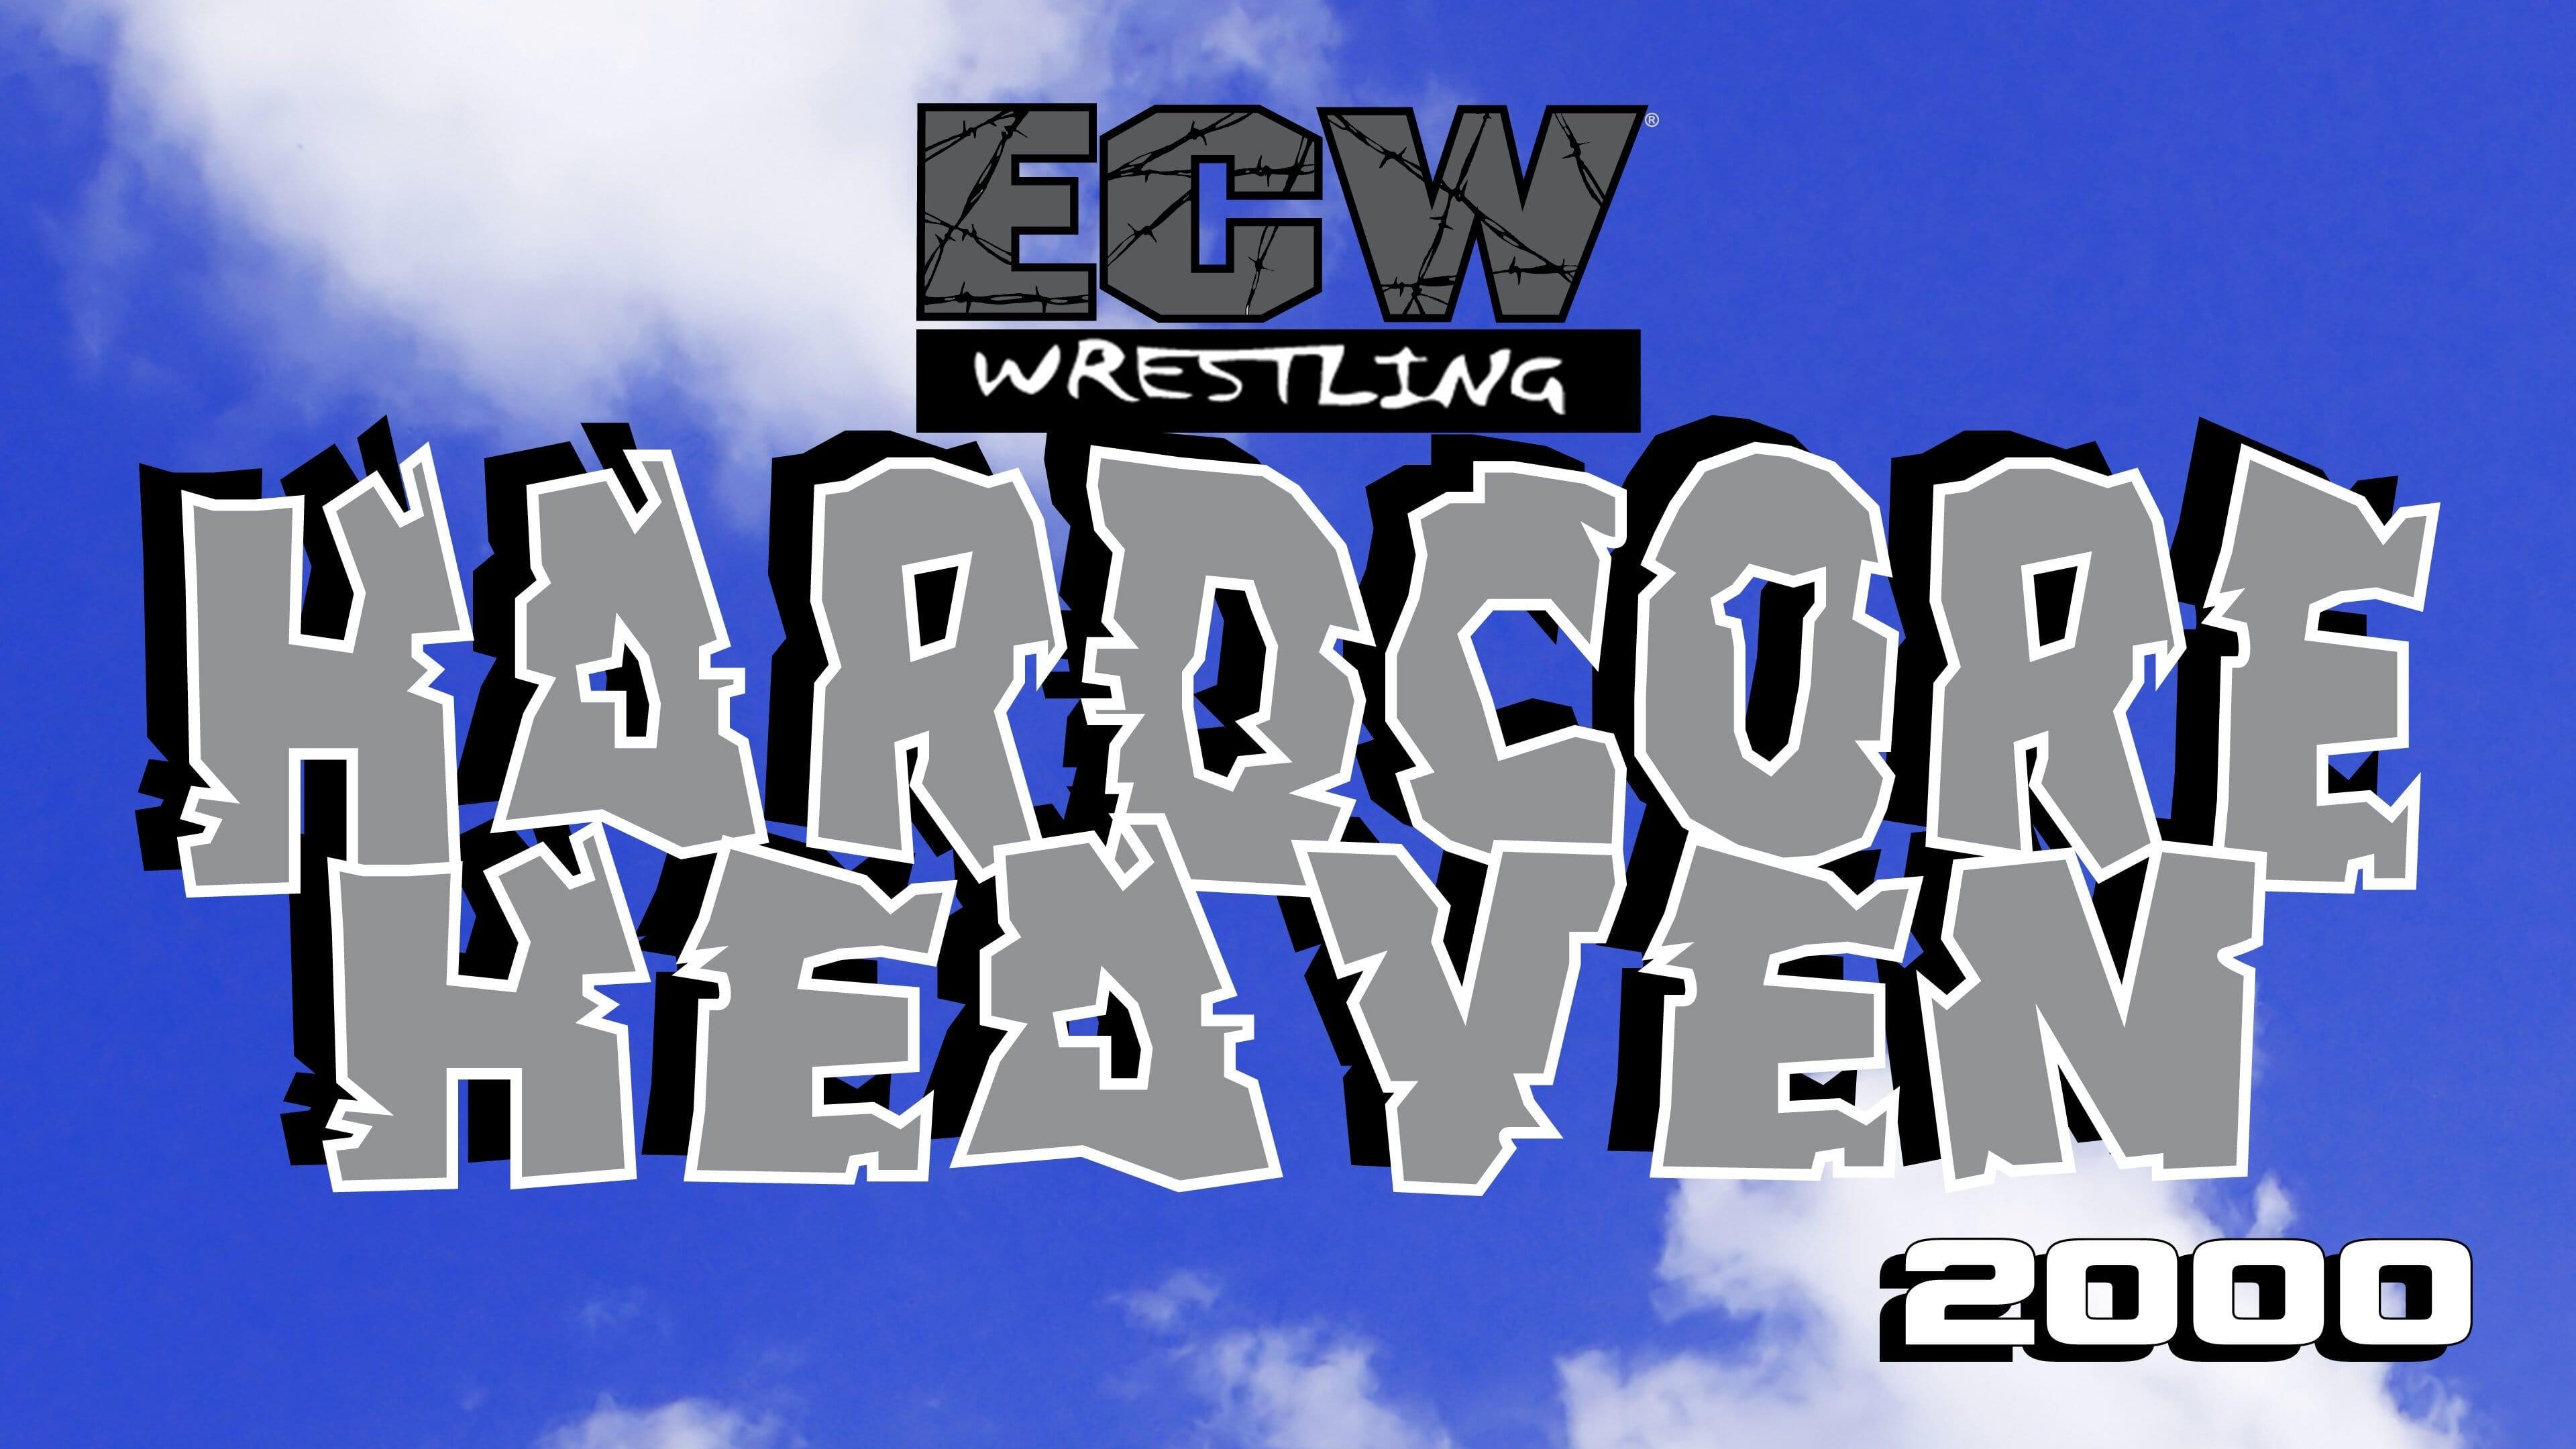 ECW Hardcore Heaven 2000 backdrop